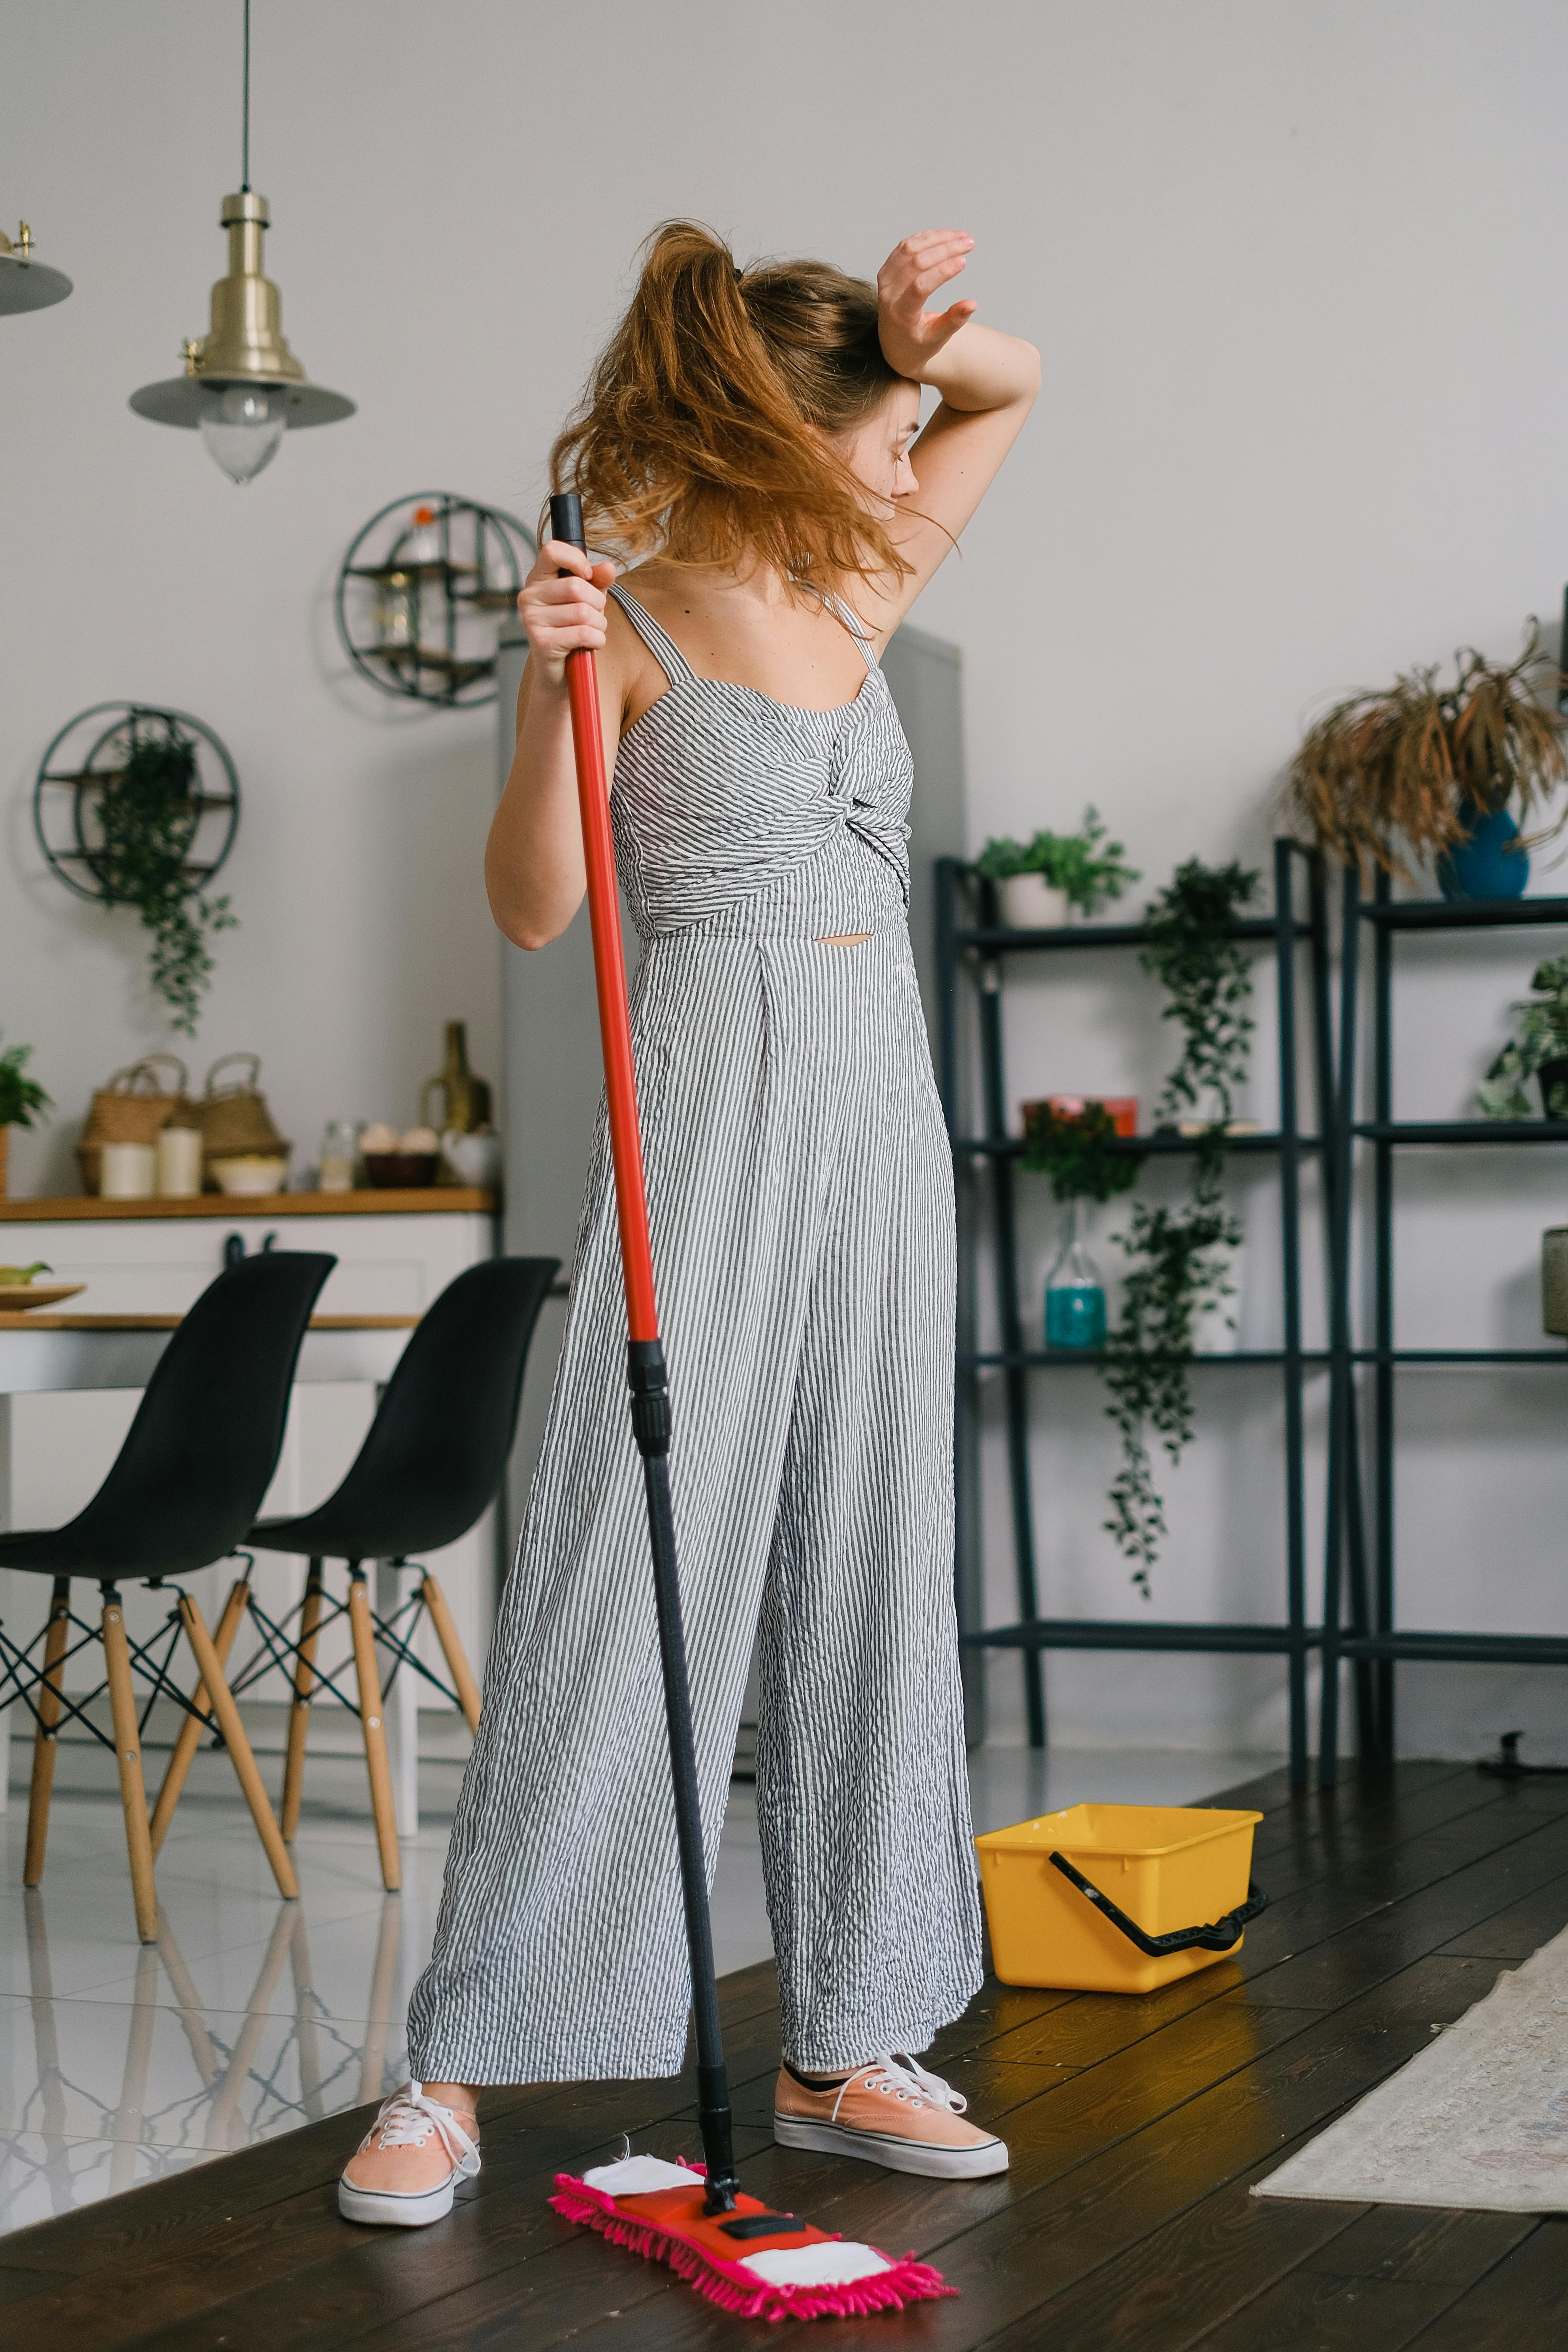 Müde Frau mit einem Wischmopp bei der Hausarbeit | Quelle: Pexels